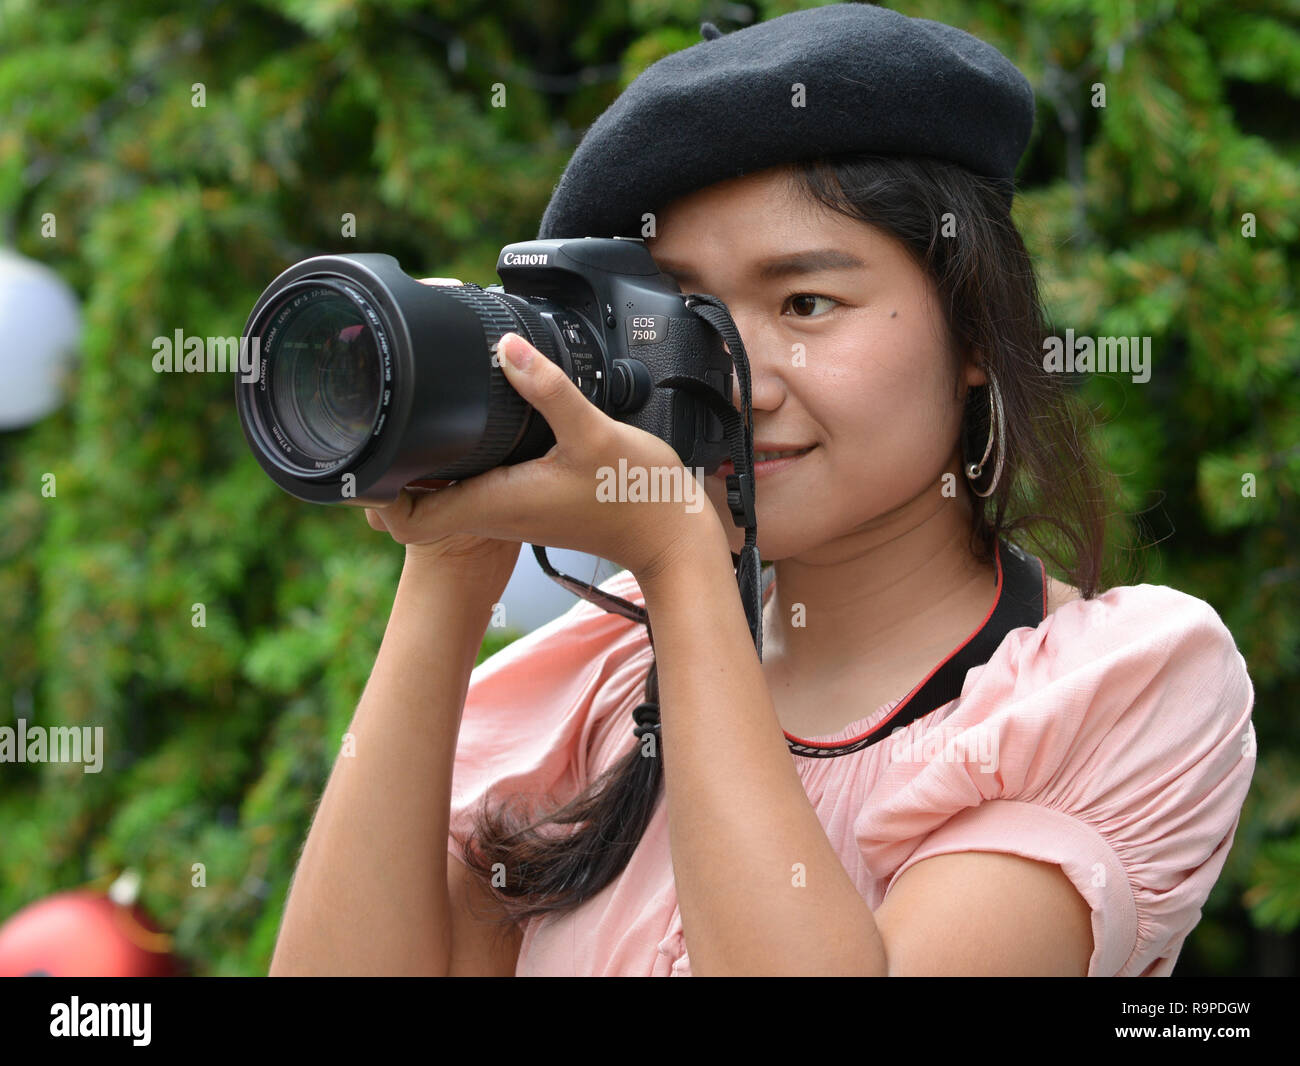 Jeune thaïlandaise photographe prend une photo portrait avec son Canon 750D appareil photo reflex numérique. Banque D'Images